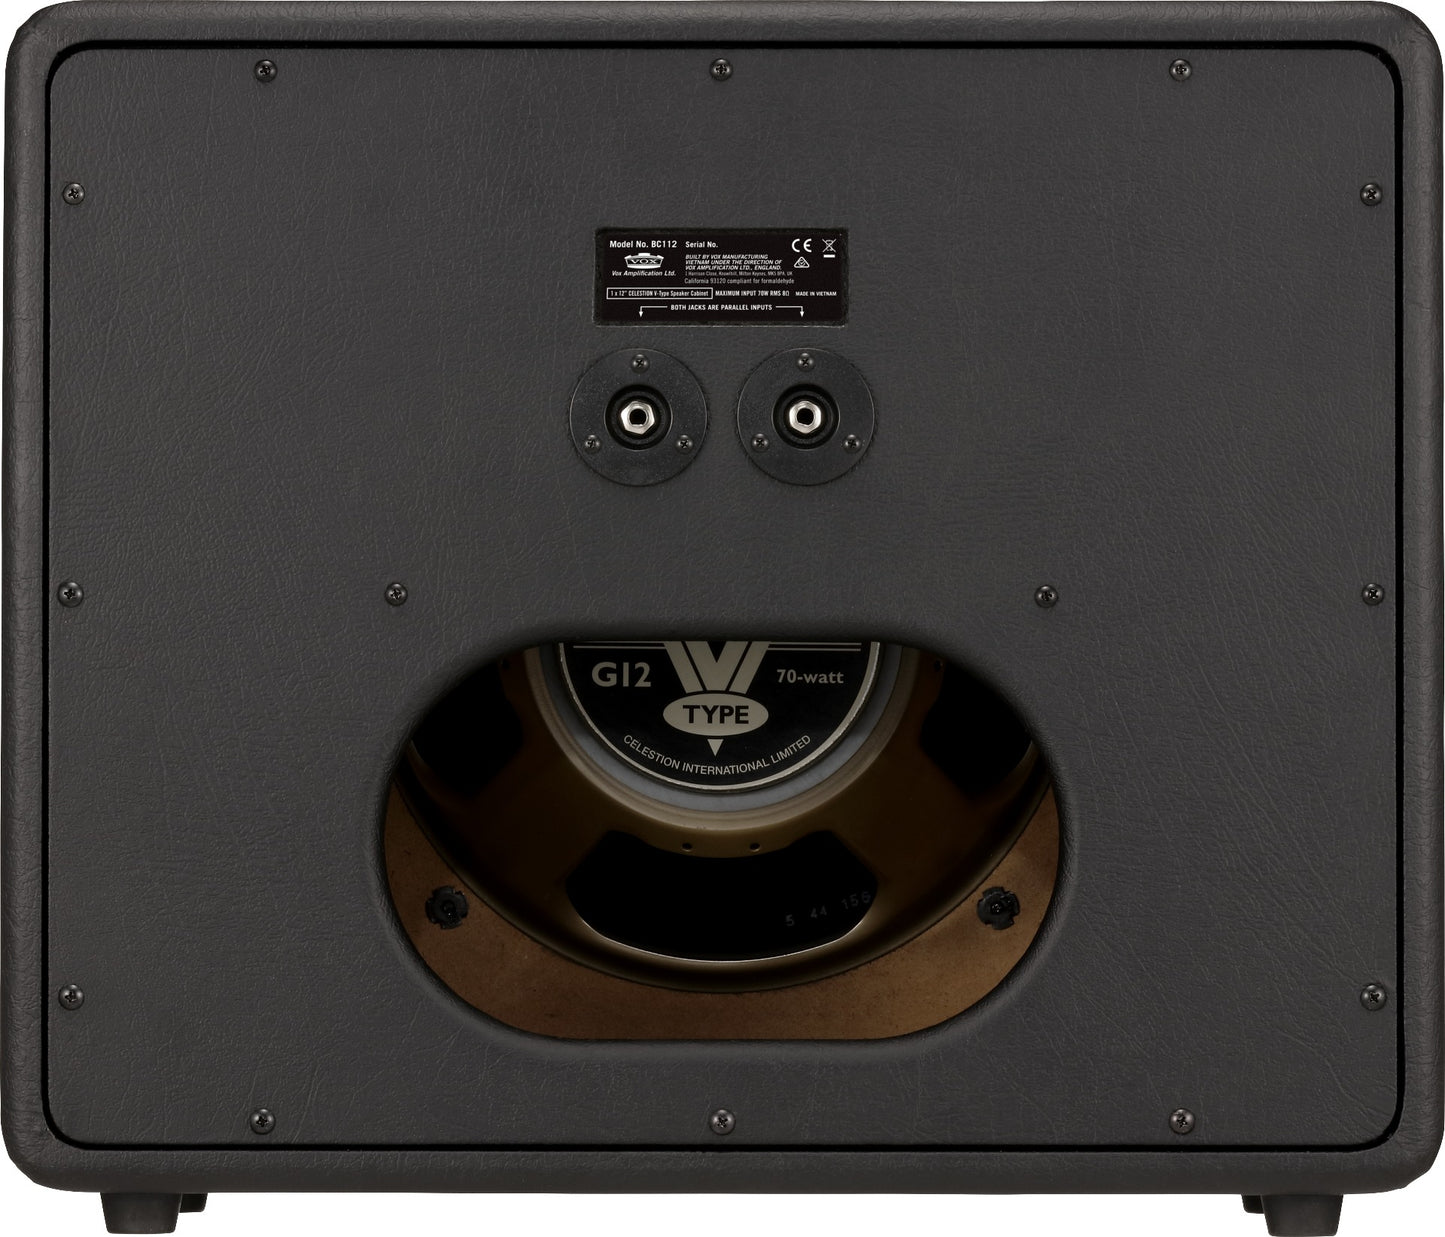 Vox BC112 Black Cab 1x12" Guitar Speaker Cabinet